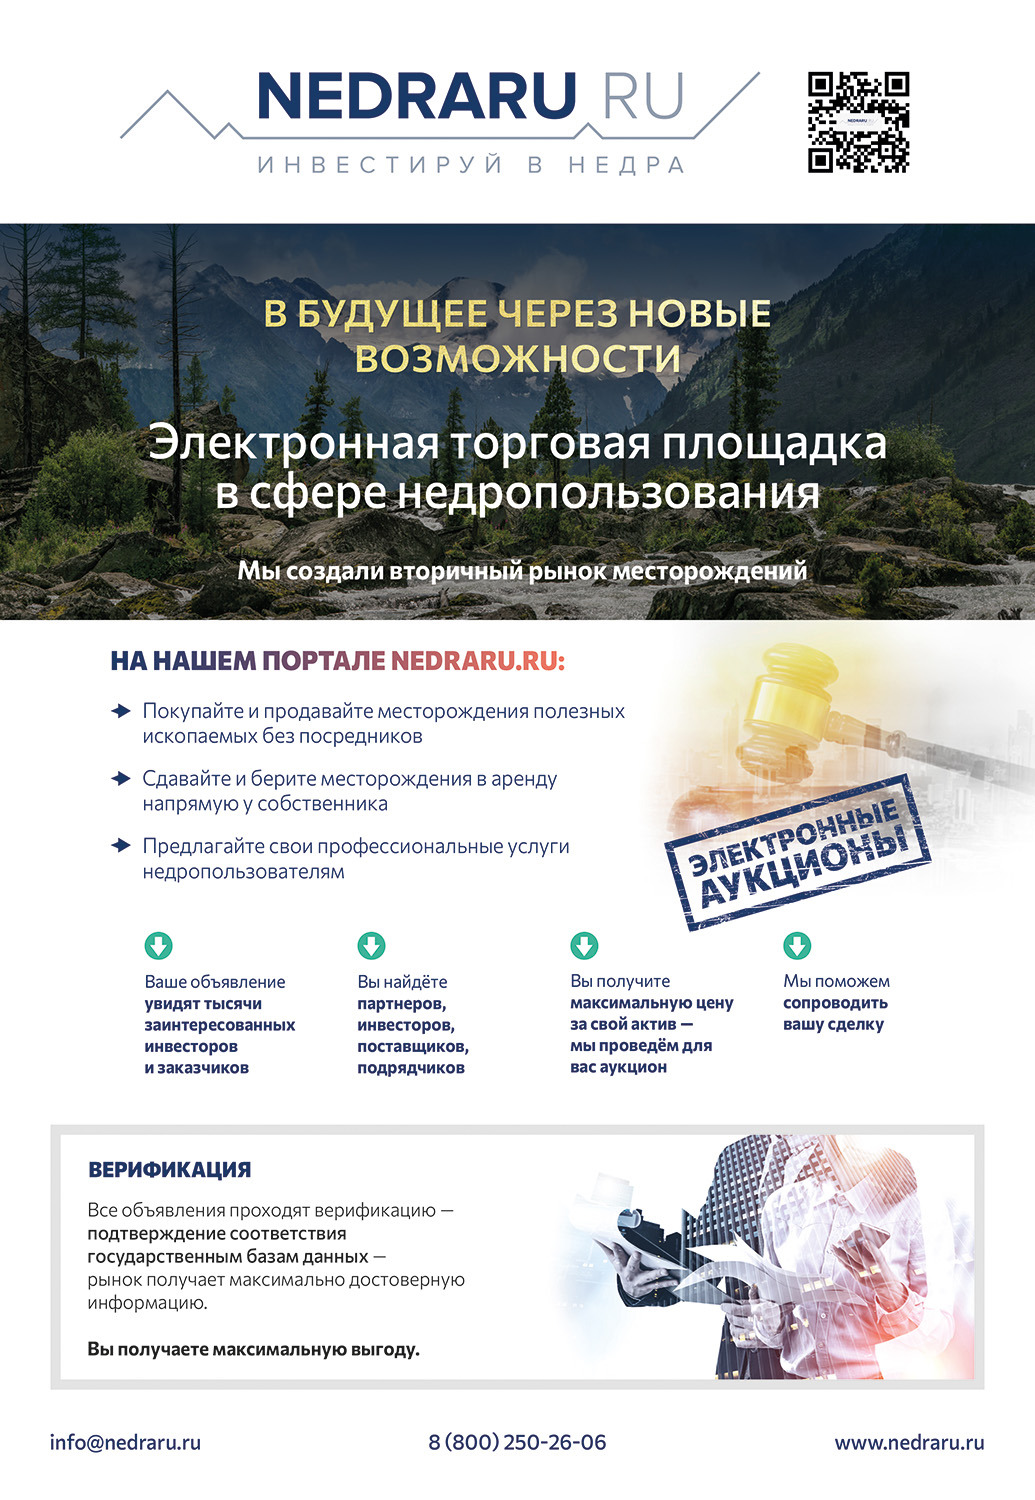 Проект Nedraru.ru